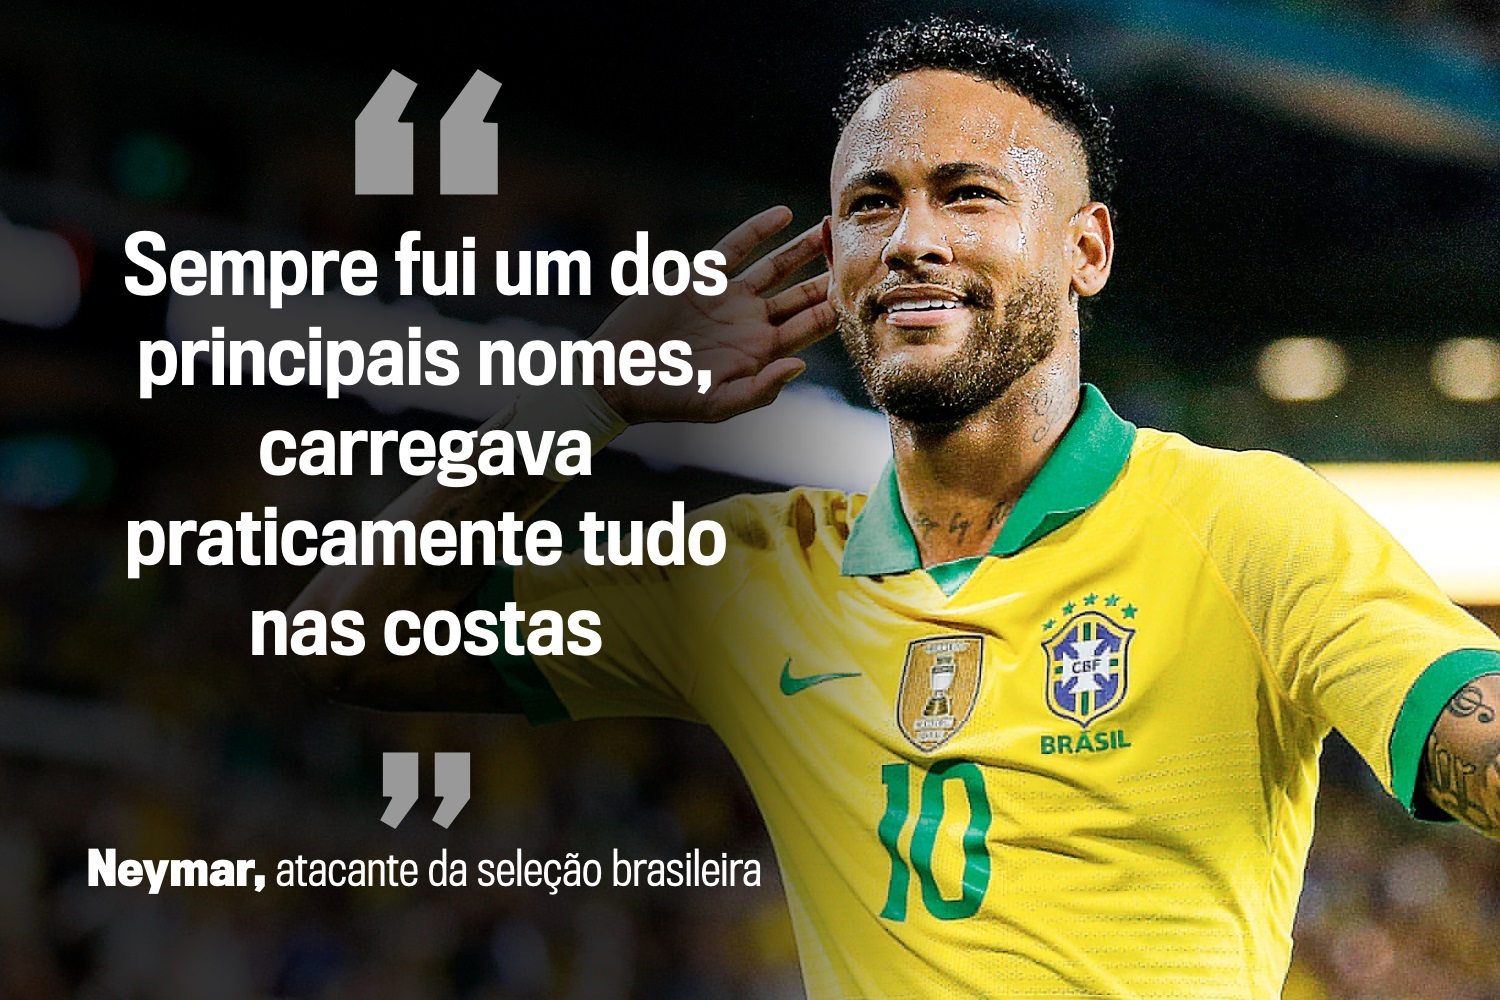 Privilégios de Neymar, NBA x China e doping: as frases da semana